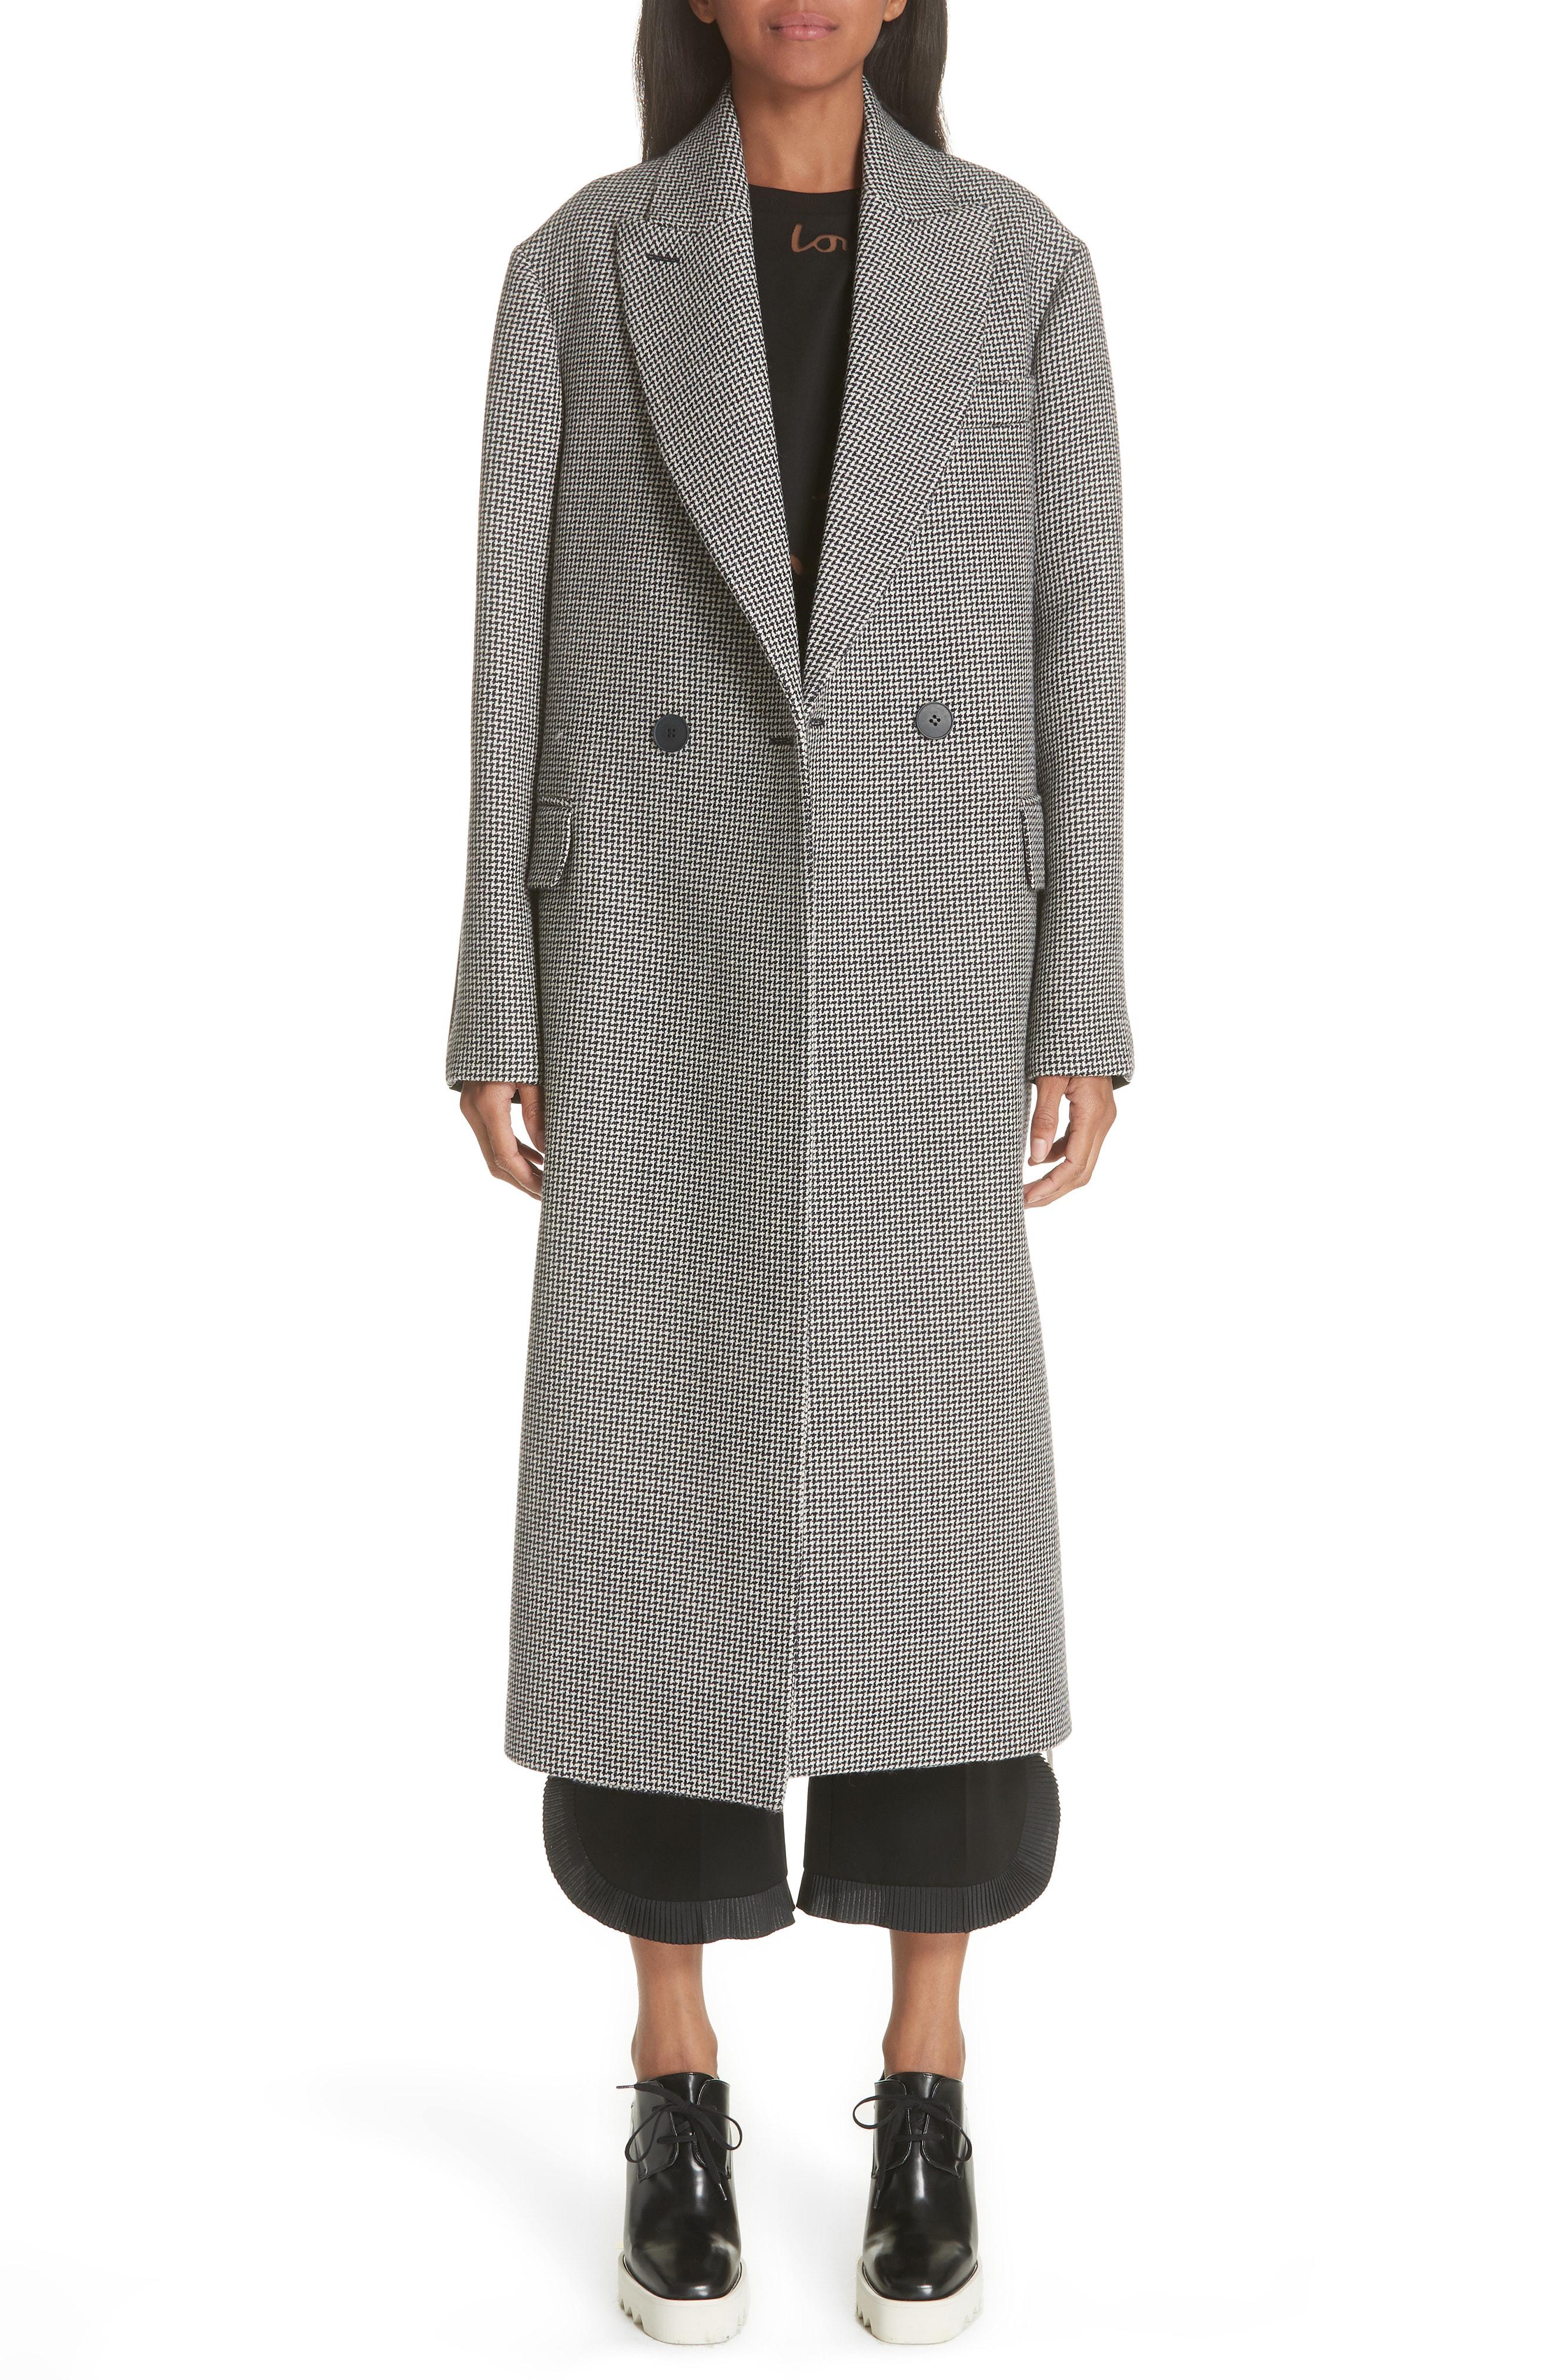 Stella McCartney Contrast Back Wool & Silk Coat in Gray - Lyst